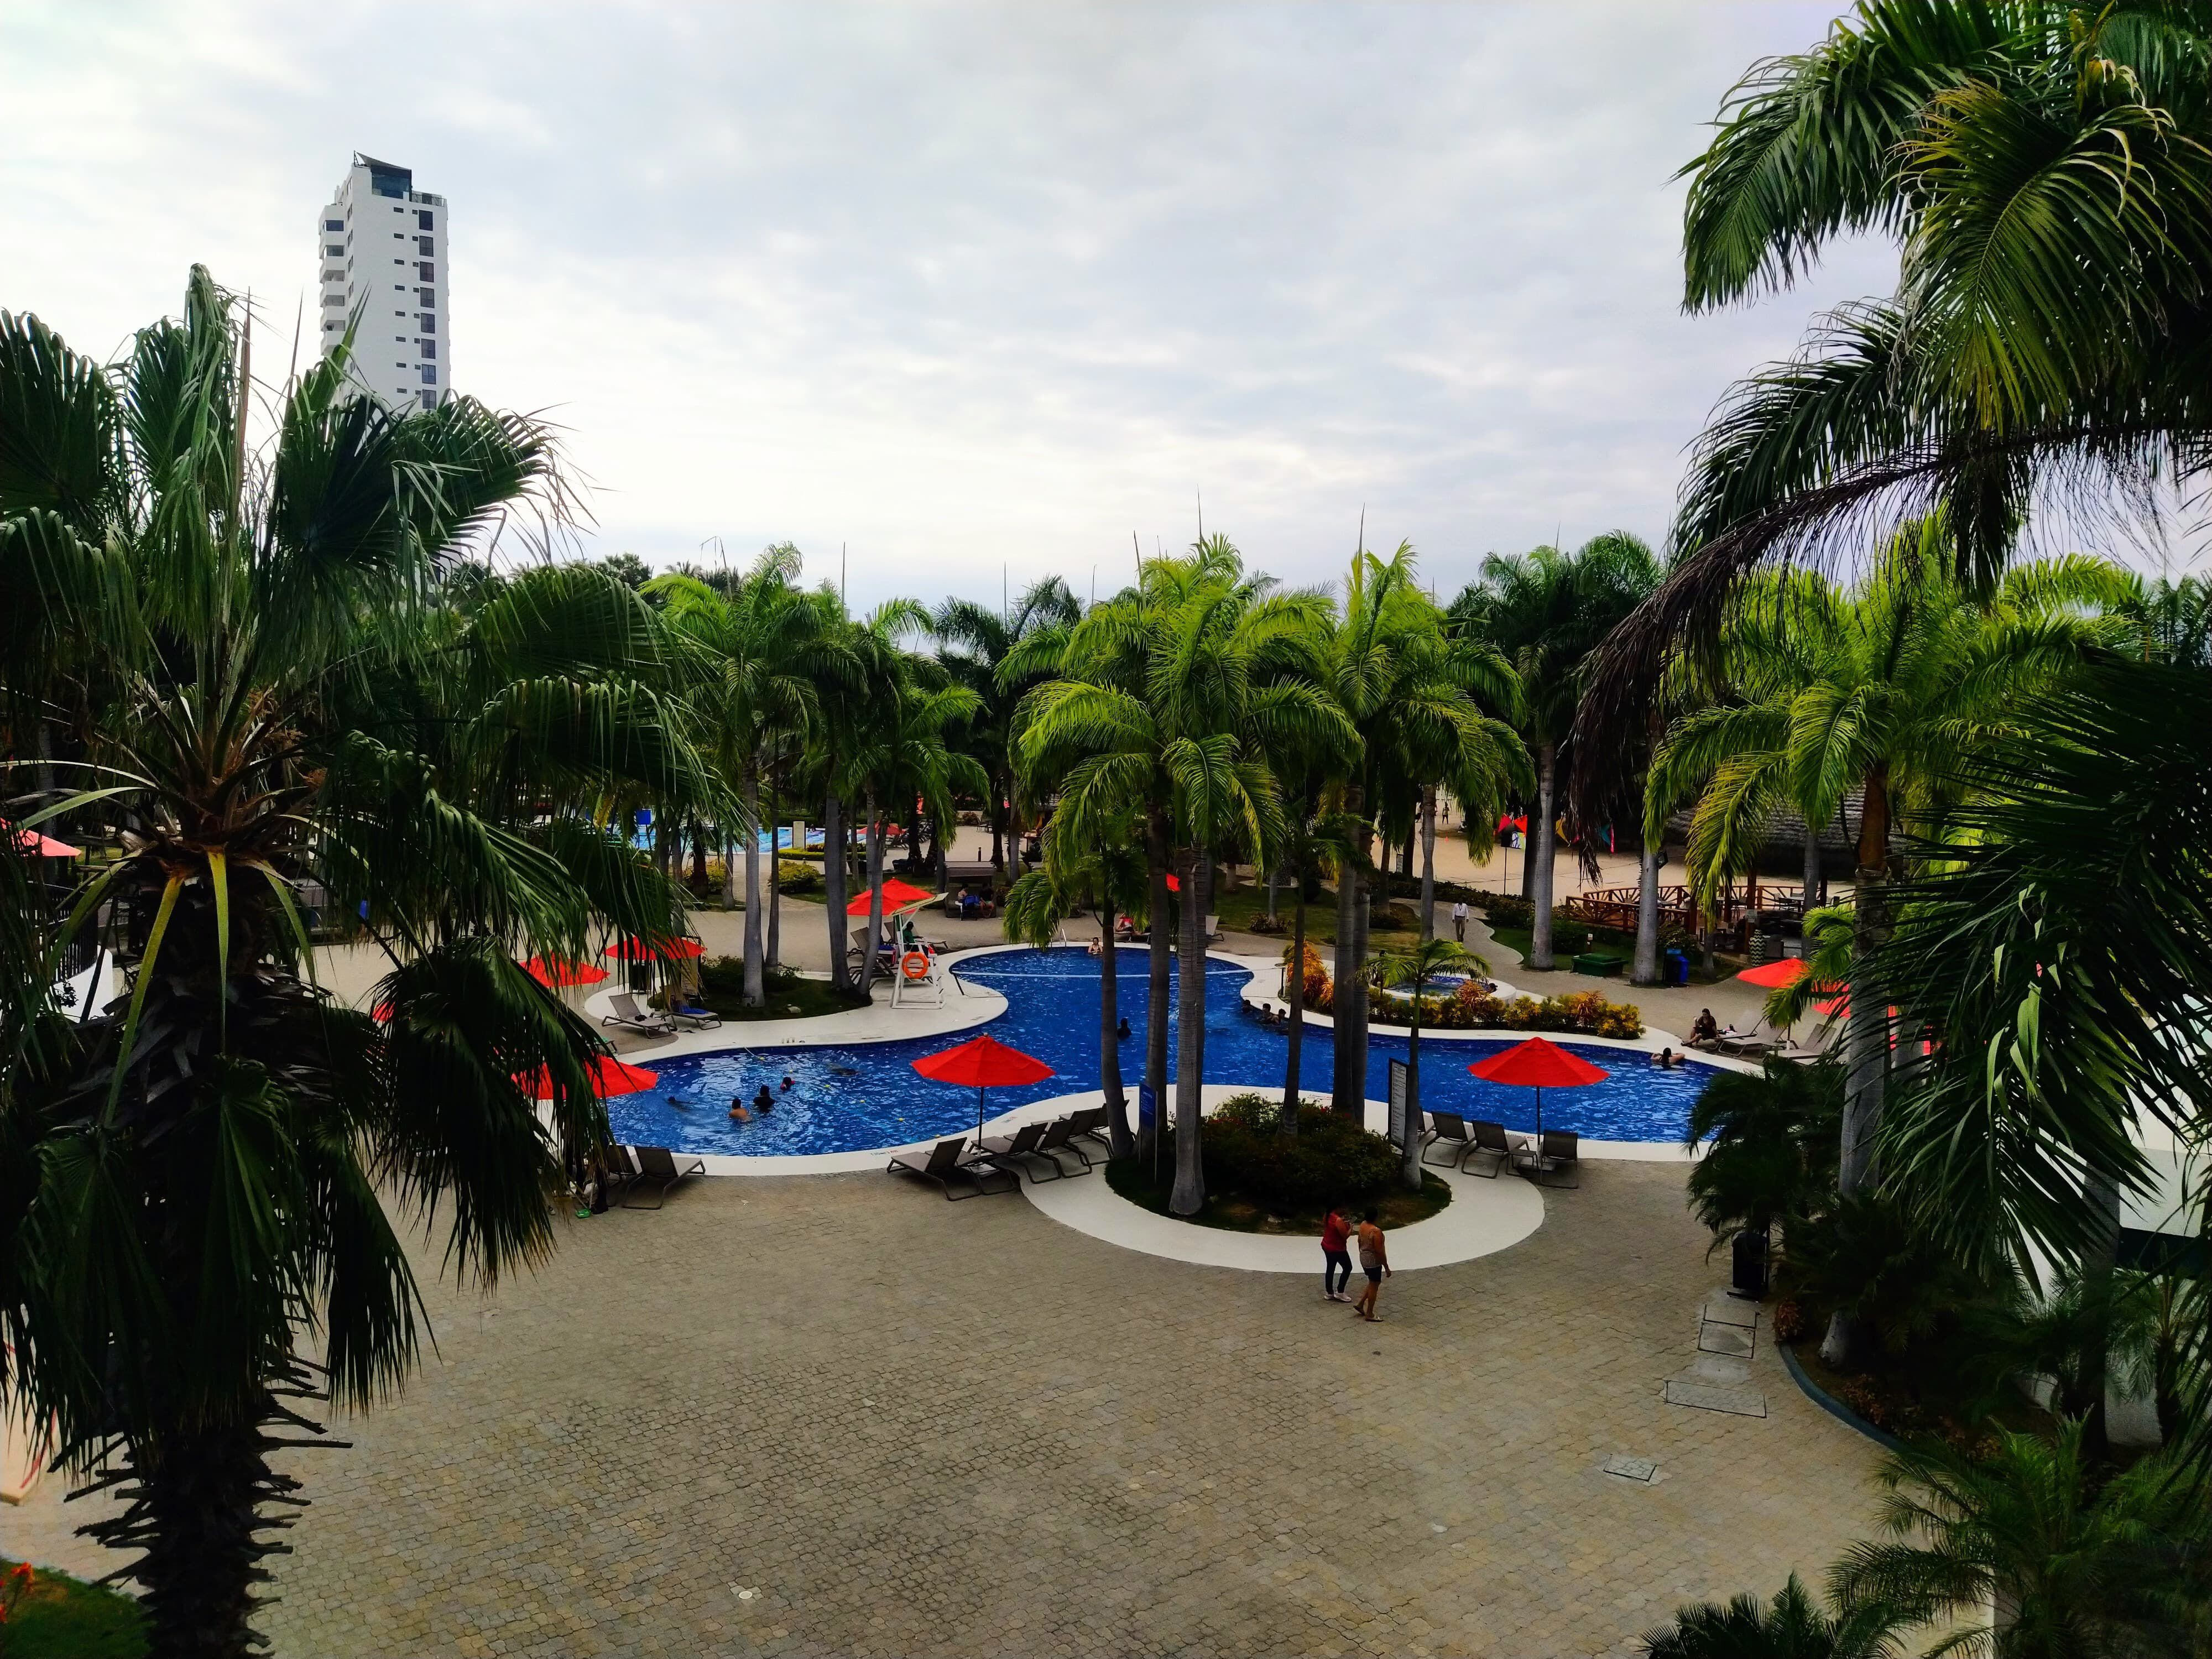 Decameron Punta Centinela está a una hora y media de Guayaquil, en la Provincia de Santa Elena.